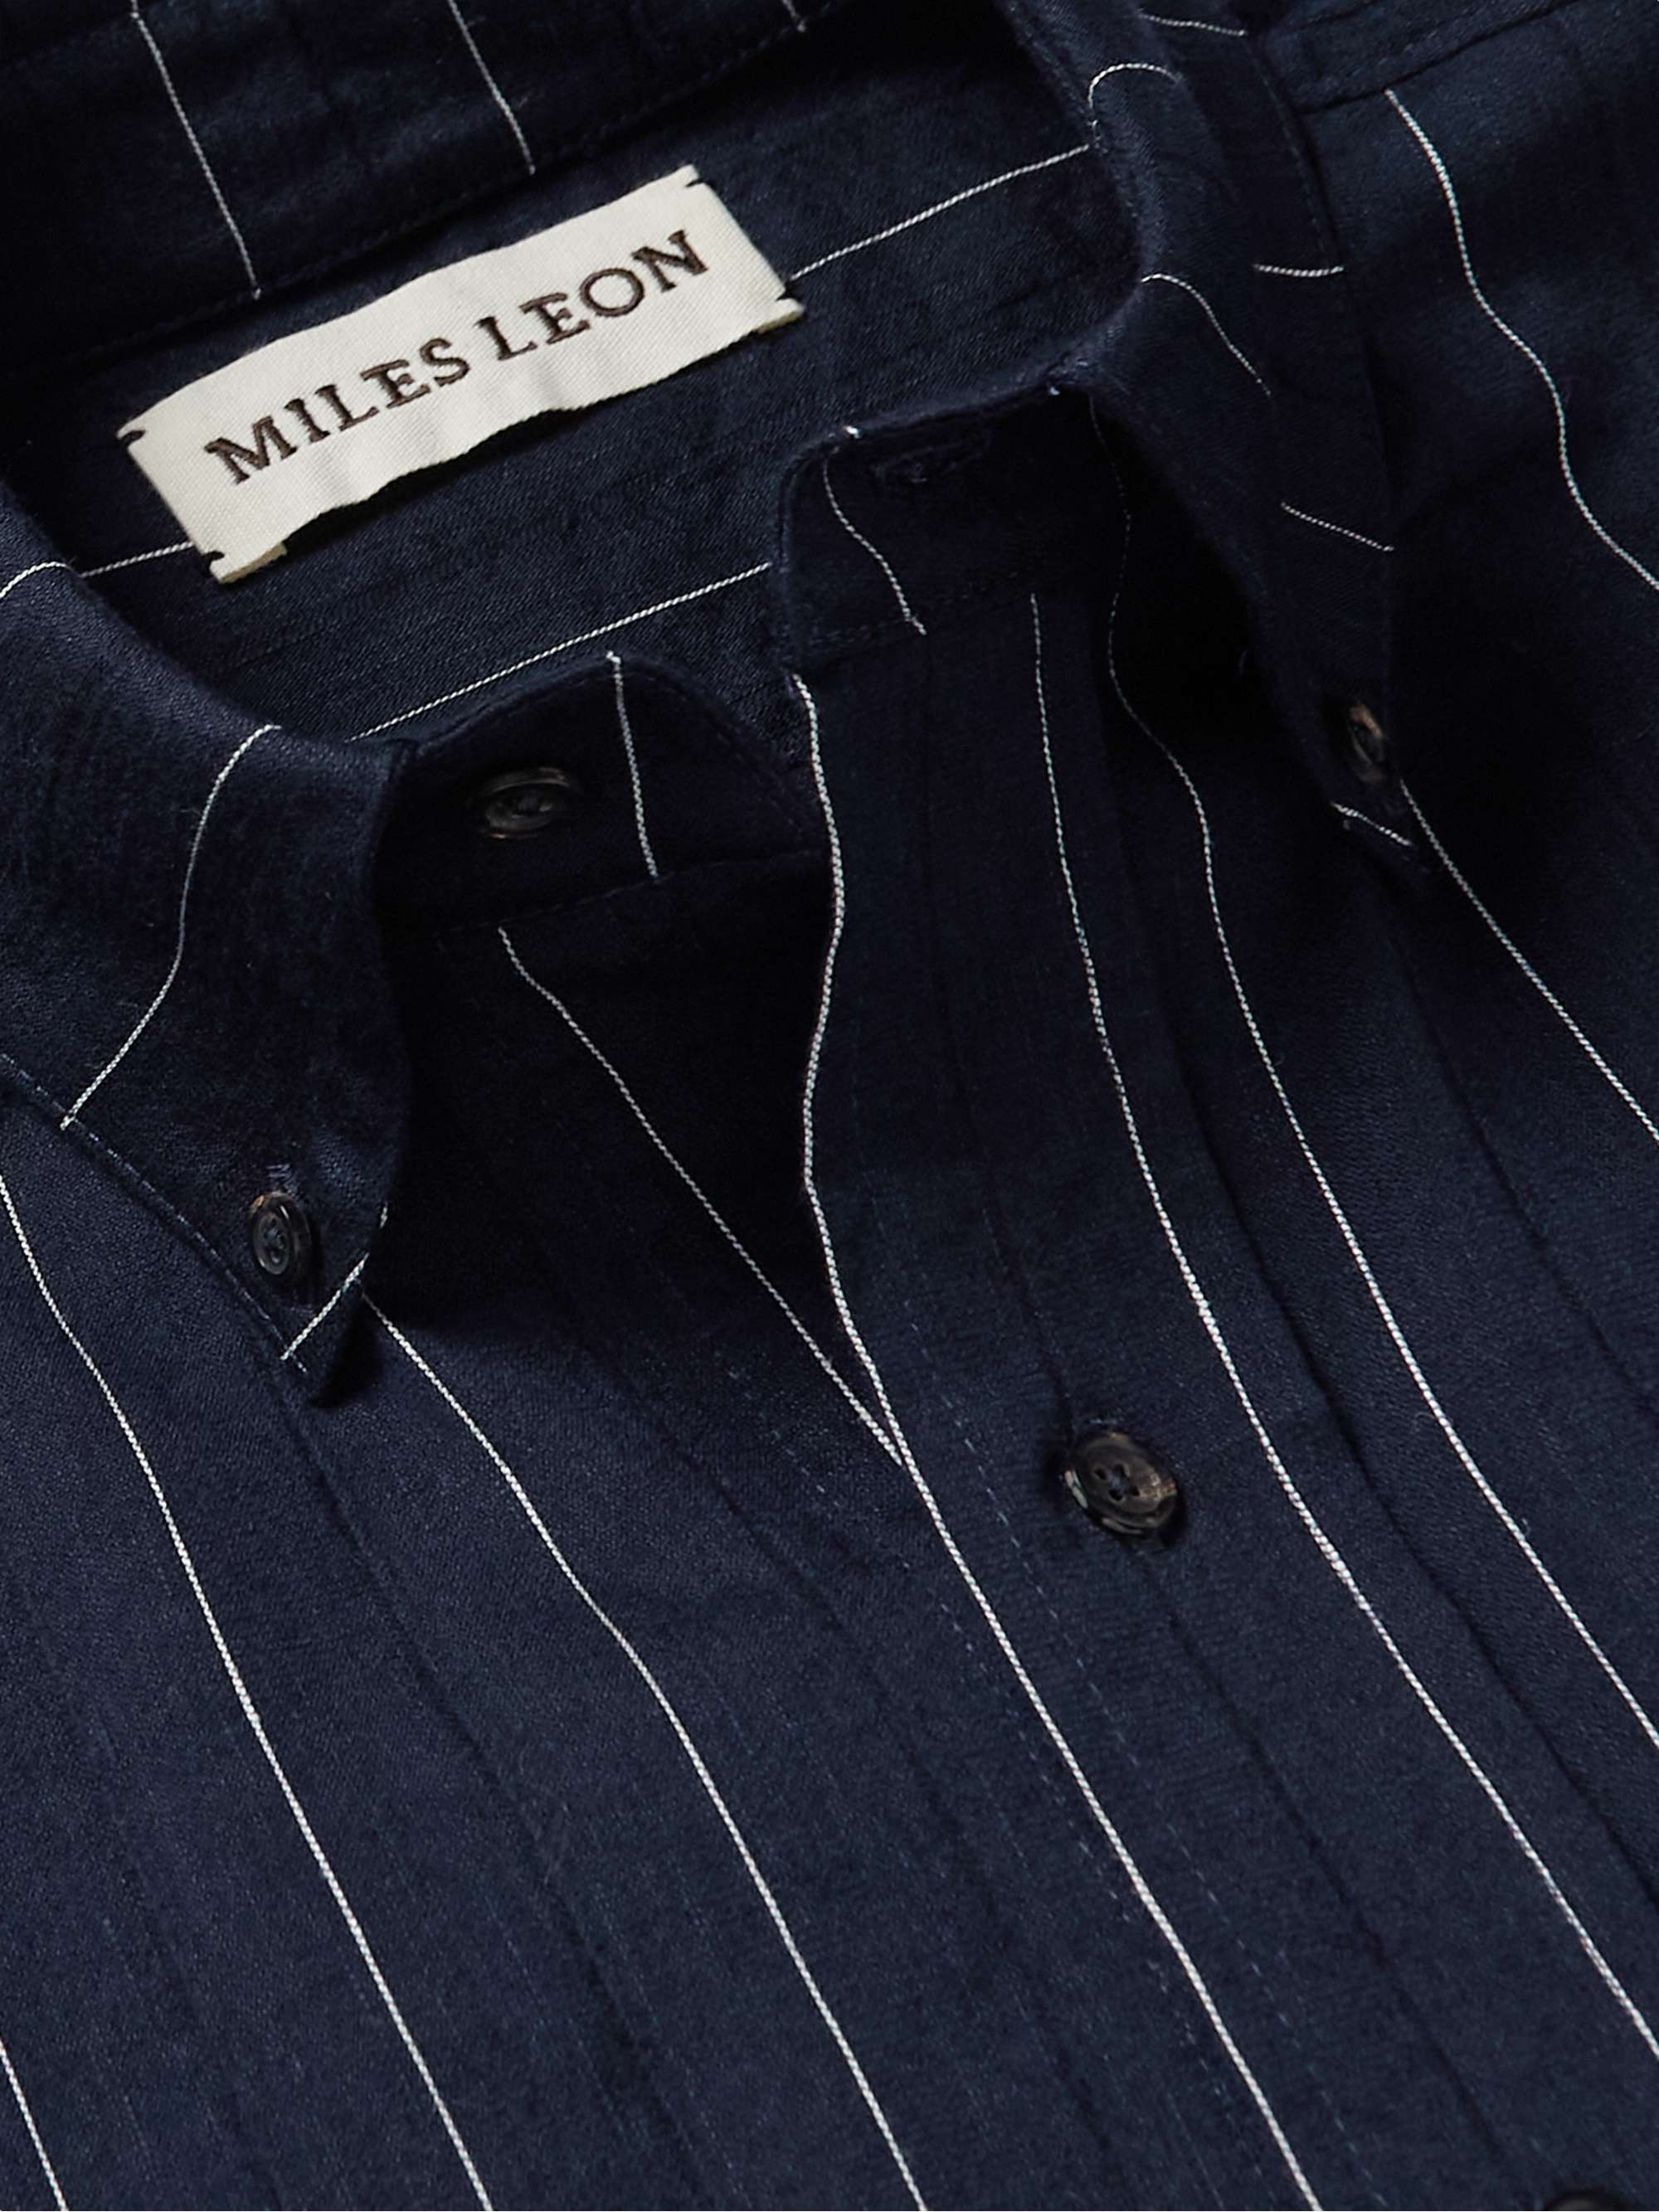 MILES LEON Zen Striped Wool, Linen and Cotton-Blend Shirt